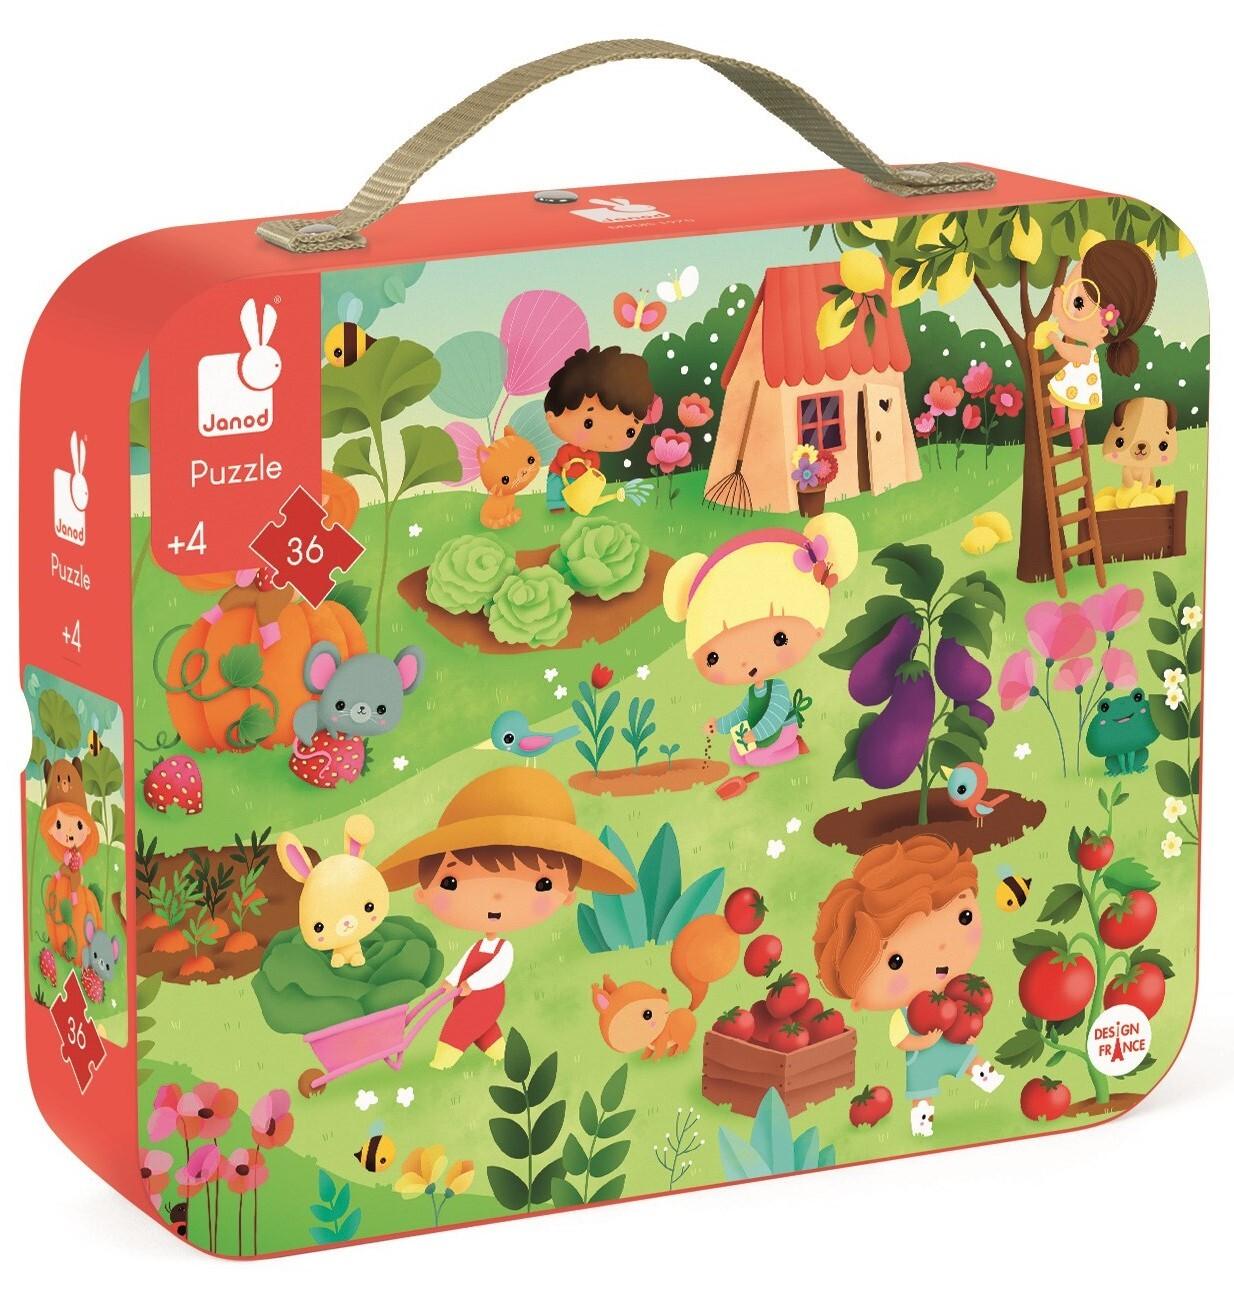 Puzzle w walizce Ogród 36 el. - kolorowy, francuski produkt Janod dla  dzieci od 4 lat - idealny prezent!